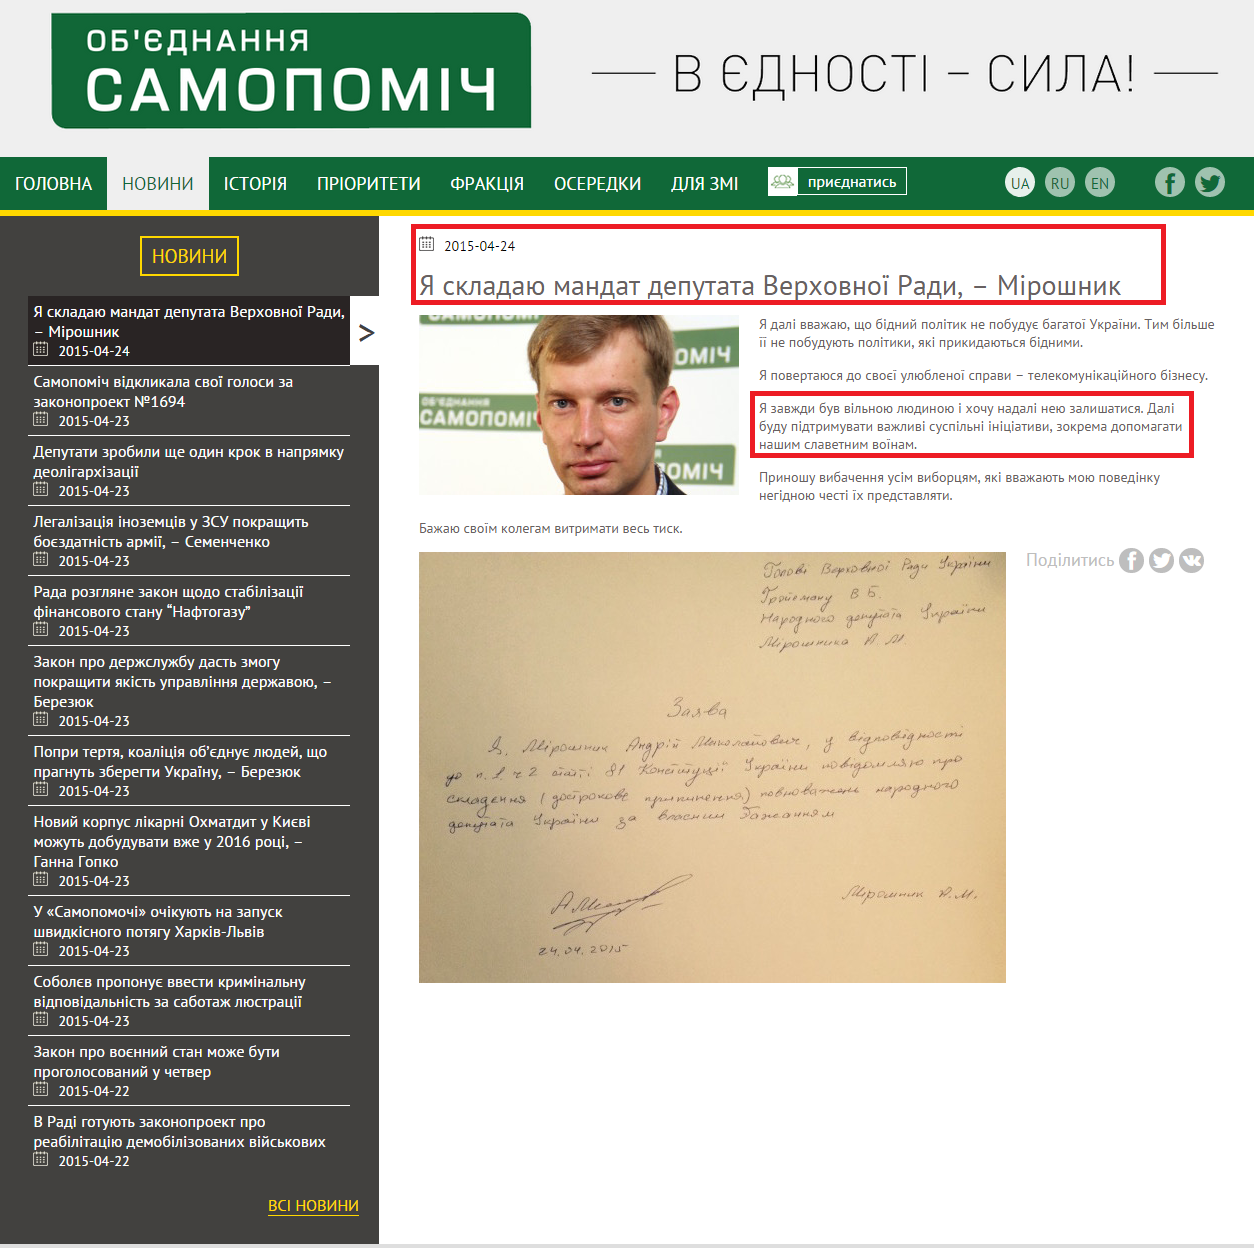 http://samopomich.ua/uk-ya-skladayu-mandat-deputata-verhovnoji-rady-miroshnyk/